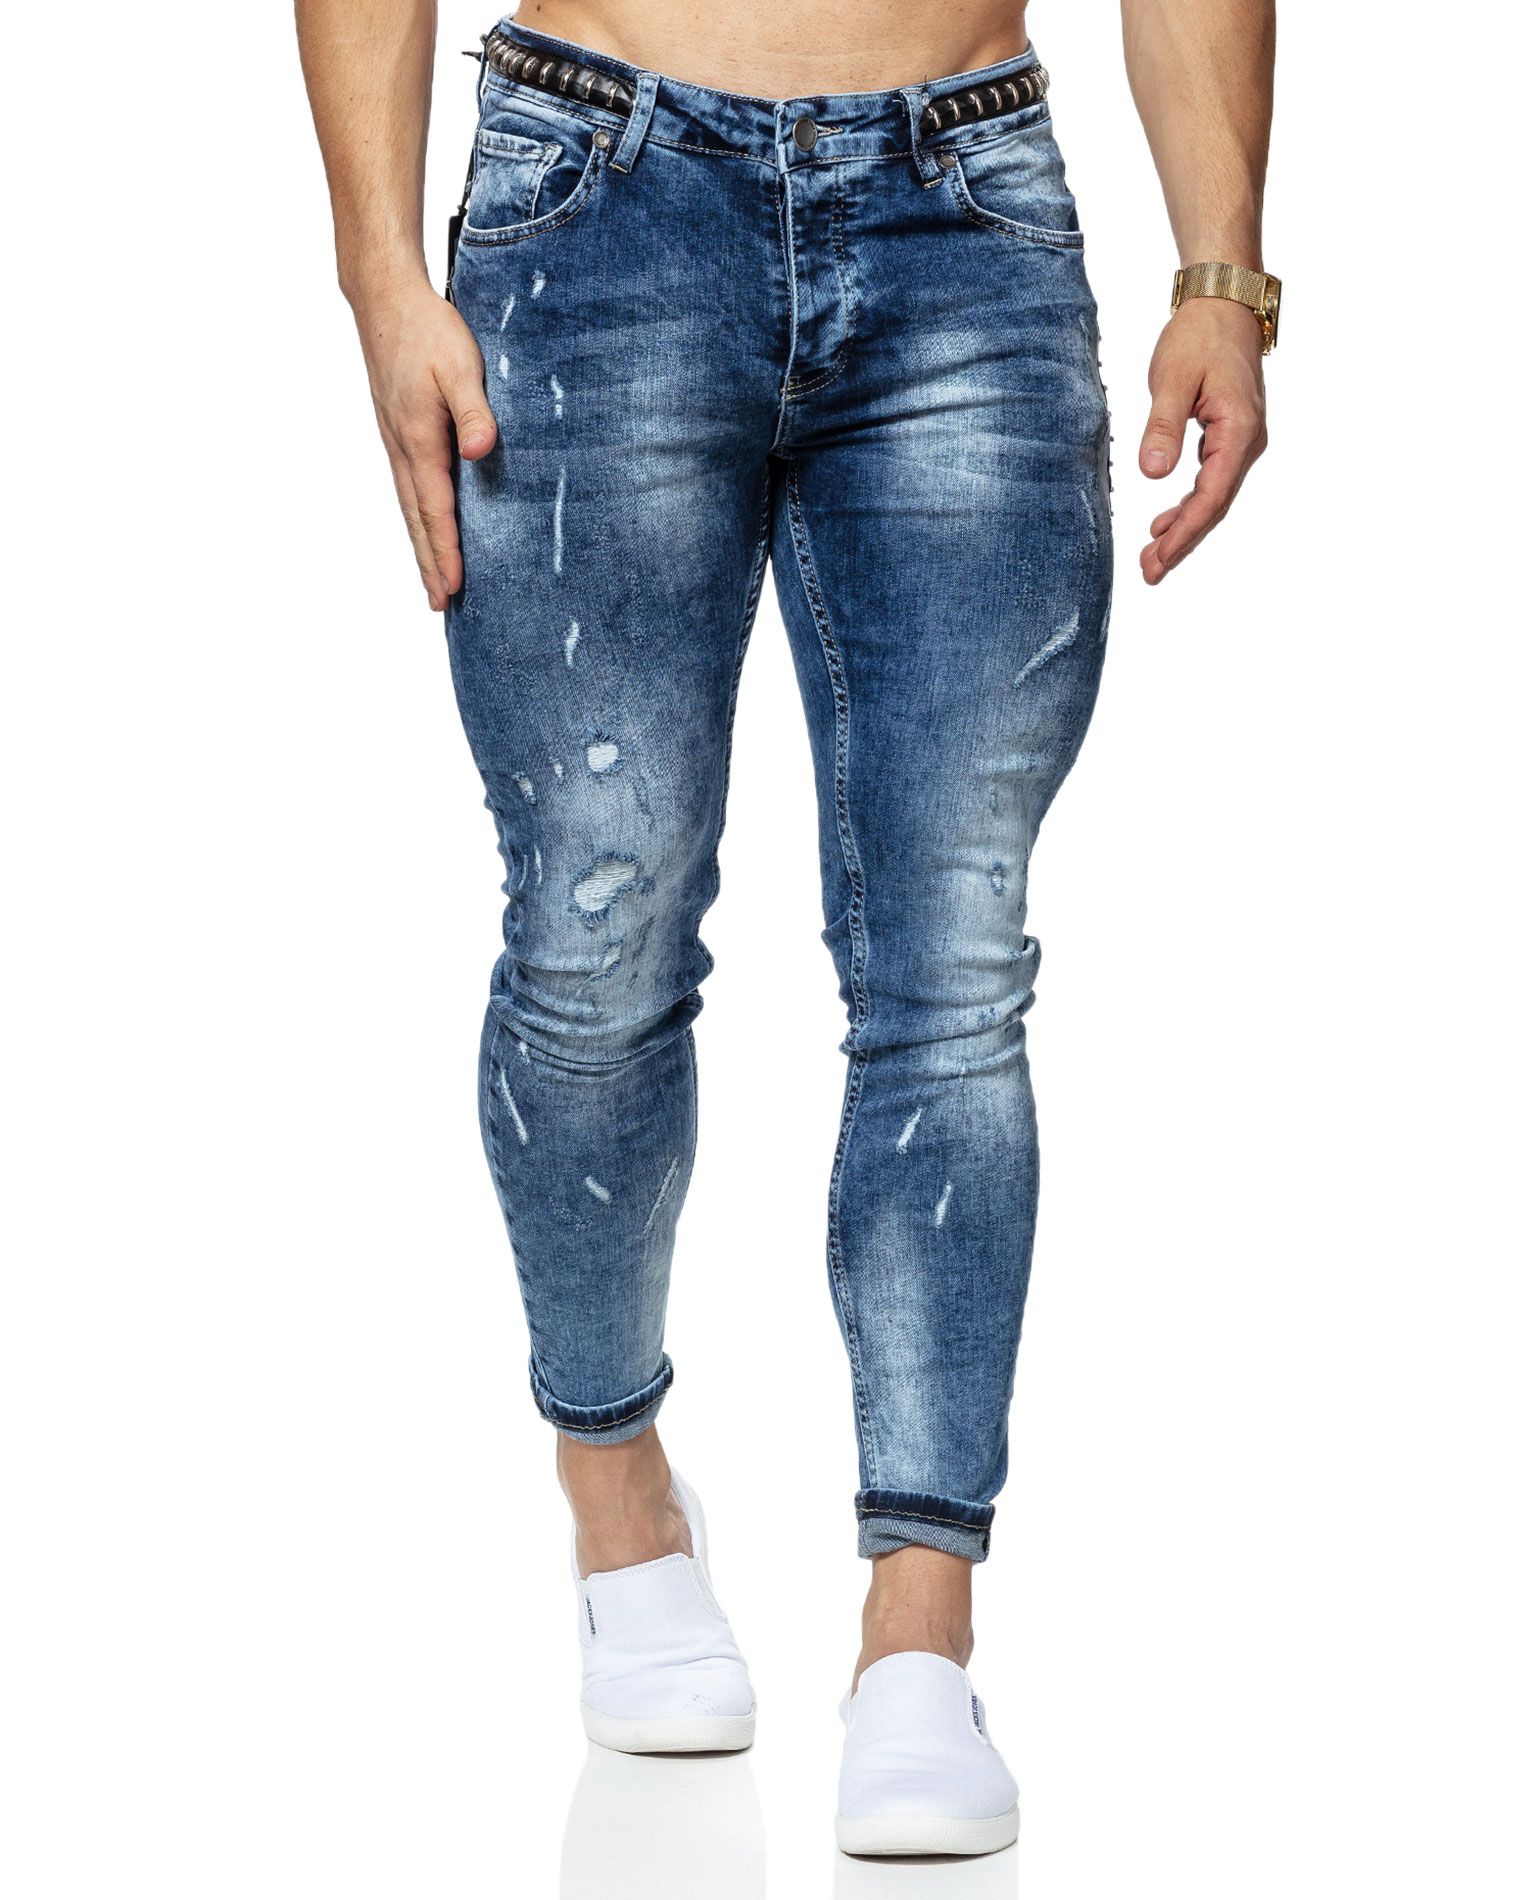 Laurel Jeans L32 Jerone - 8005 - Jeans - Jerone